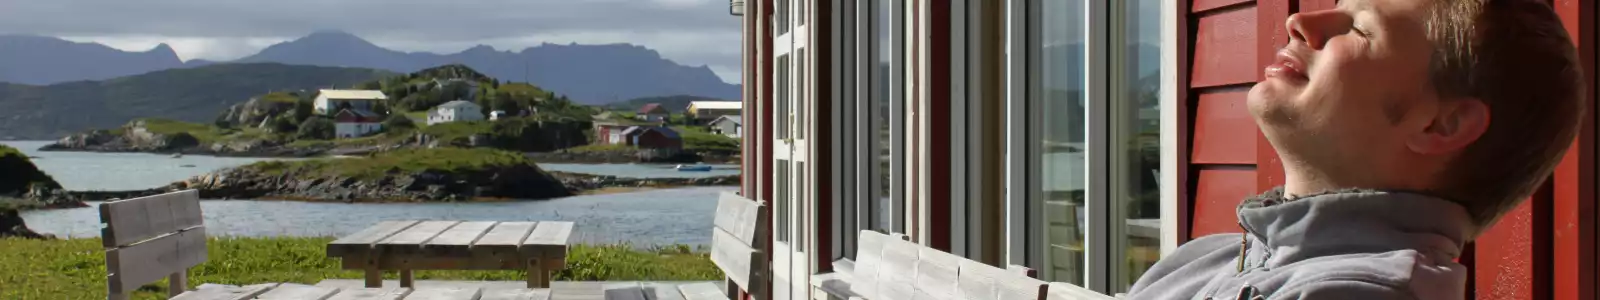 vakantiehuizen-noorwegen-segment-header